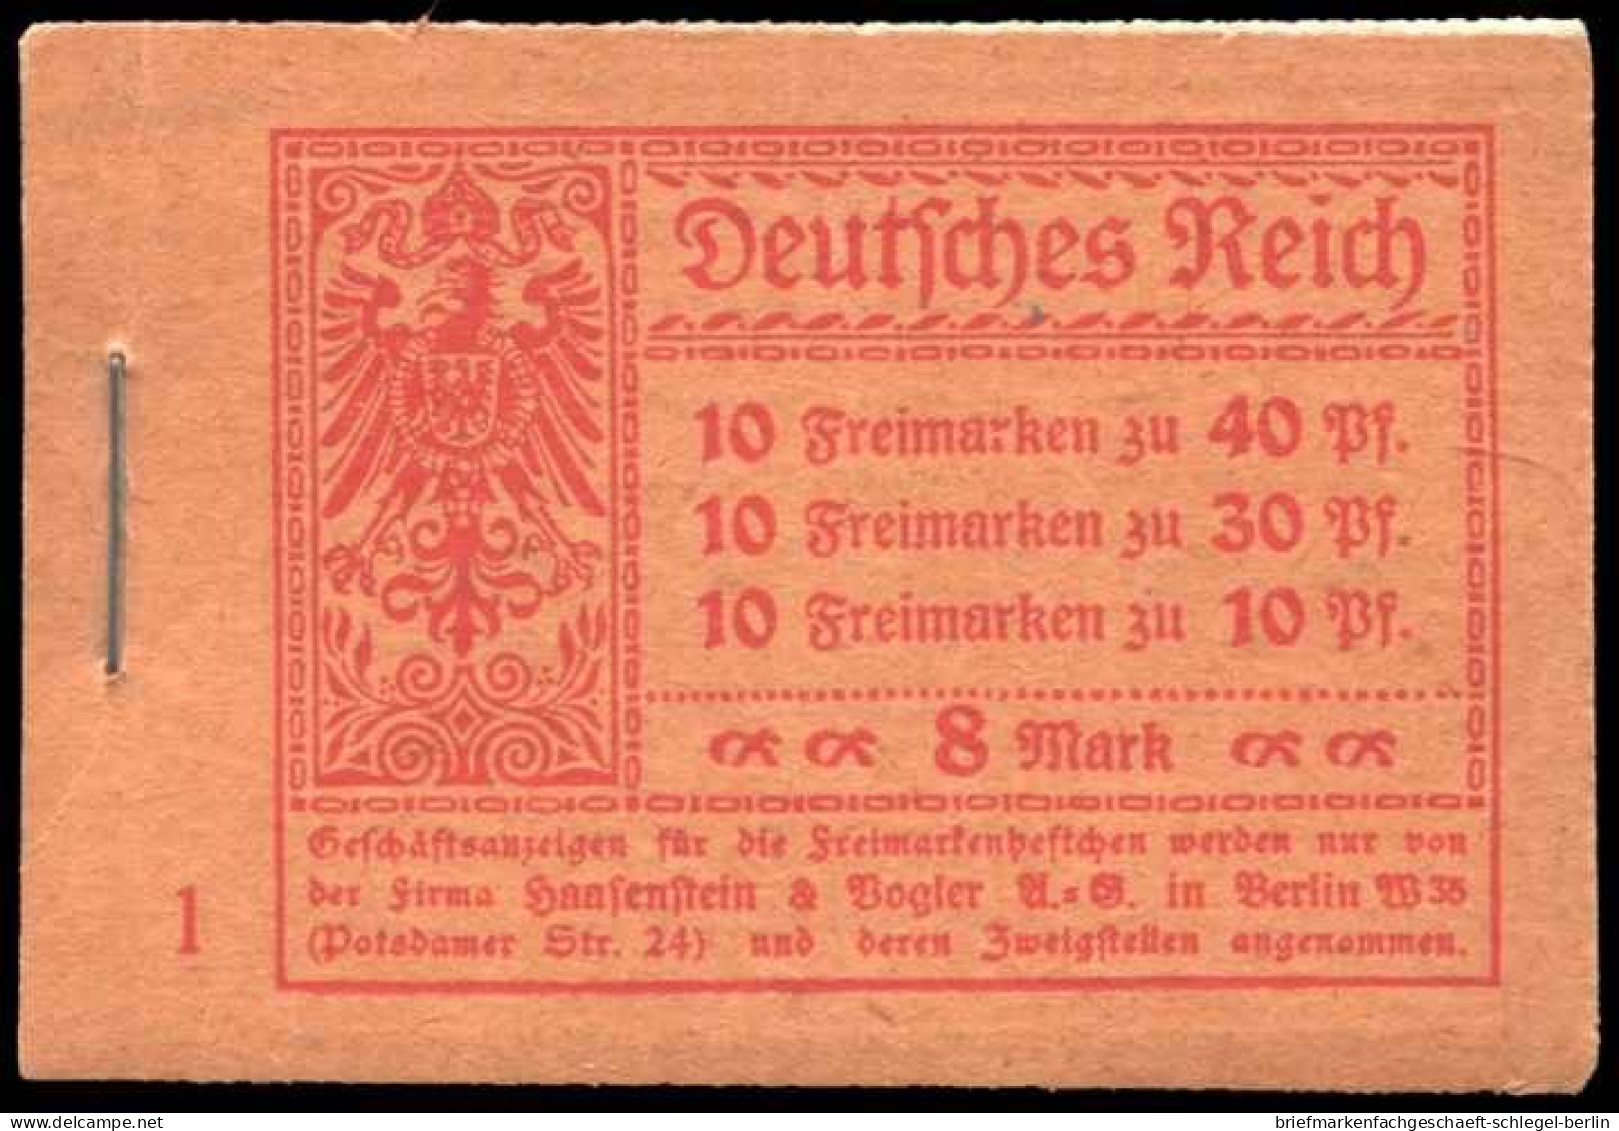 Deutsches Reich, 1921, MH 14.1 A, Postfrisch - Postzegelboekjes